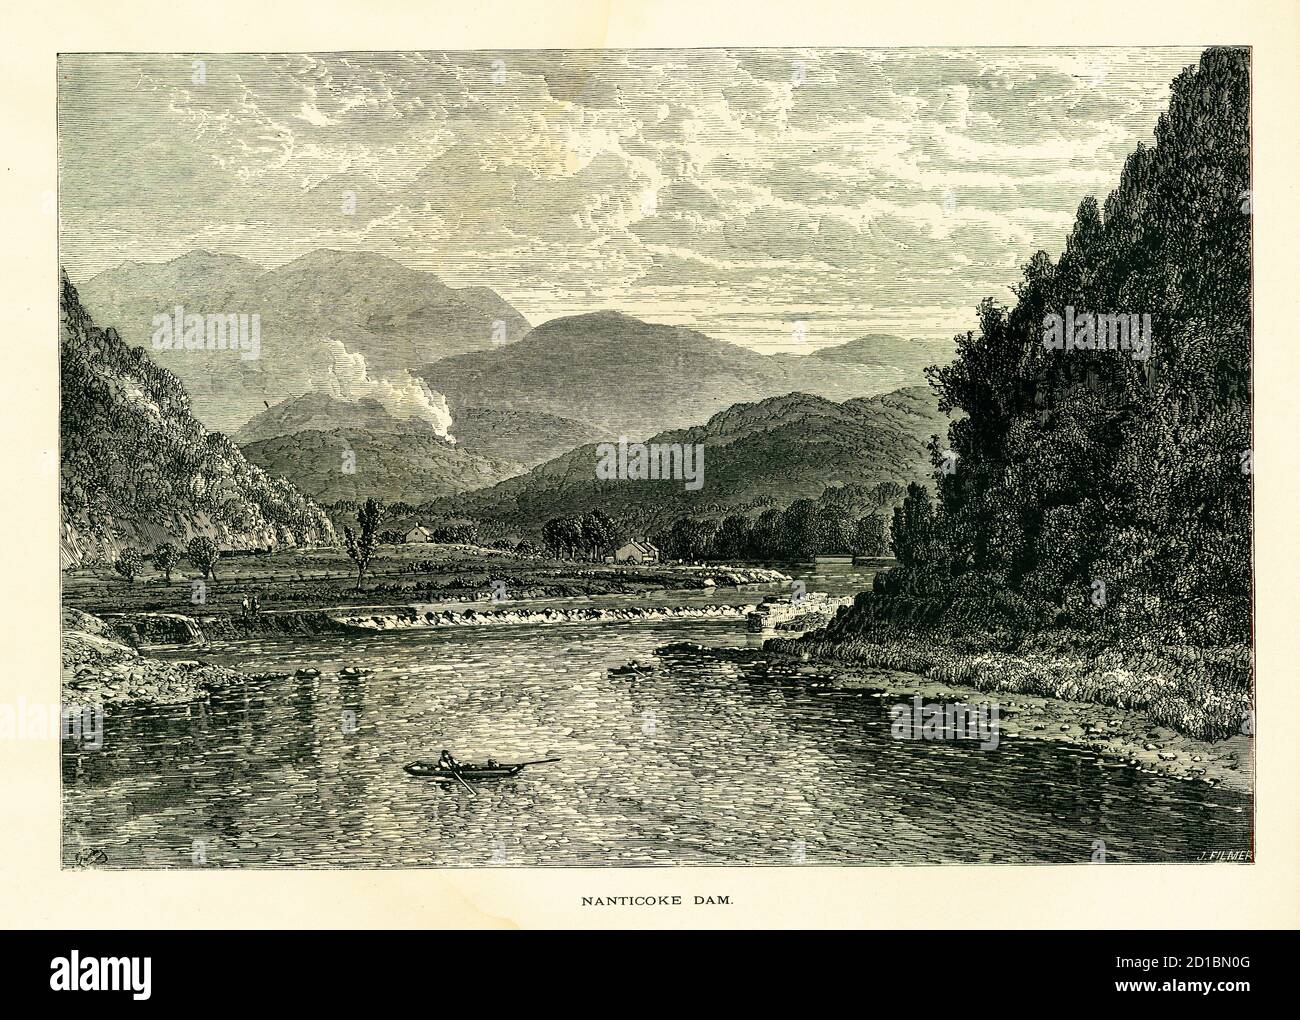 Gravure antique du barrage de Nanticoke sur la rivière Susquehanna, État américain de Pennsylvanie. Illustration publiée dans l'Amérique pittoresque ou la Terre nous Banque D'Images